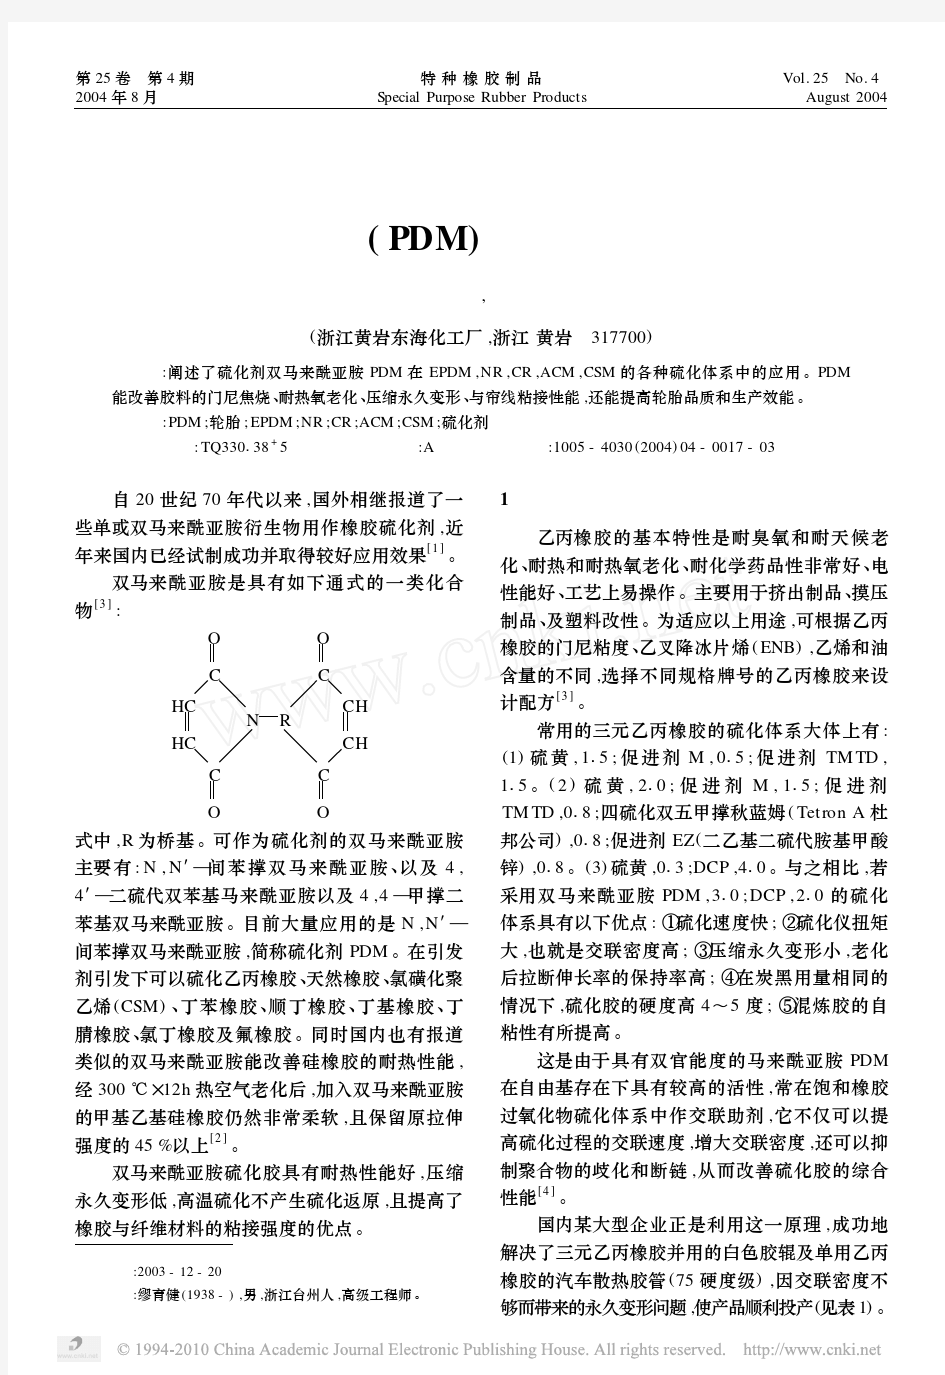 双马来酰亚胺PDM在橡胶中的应用初探